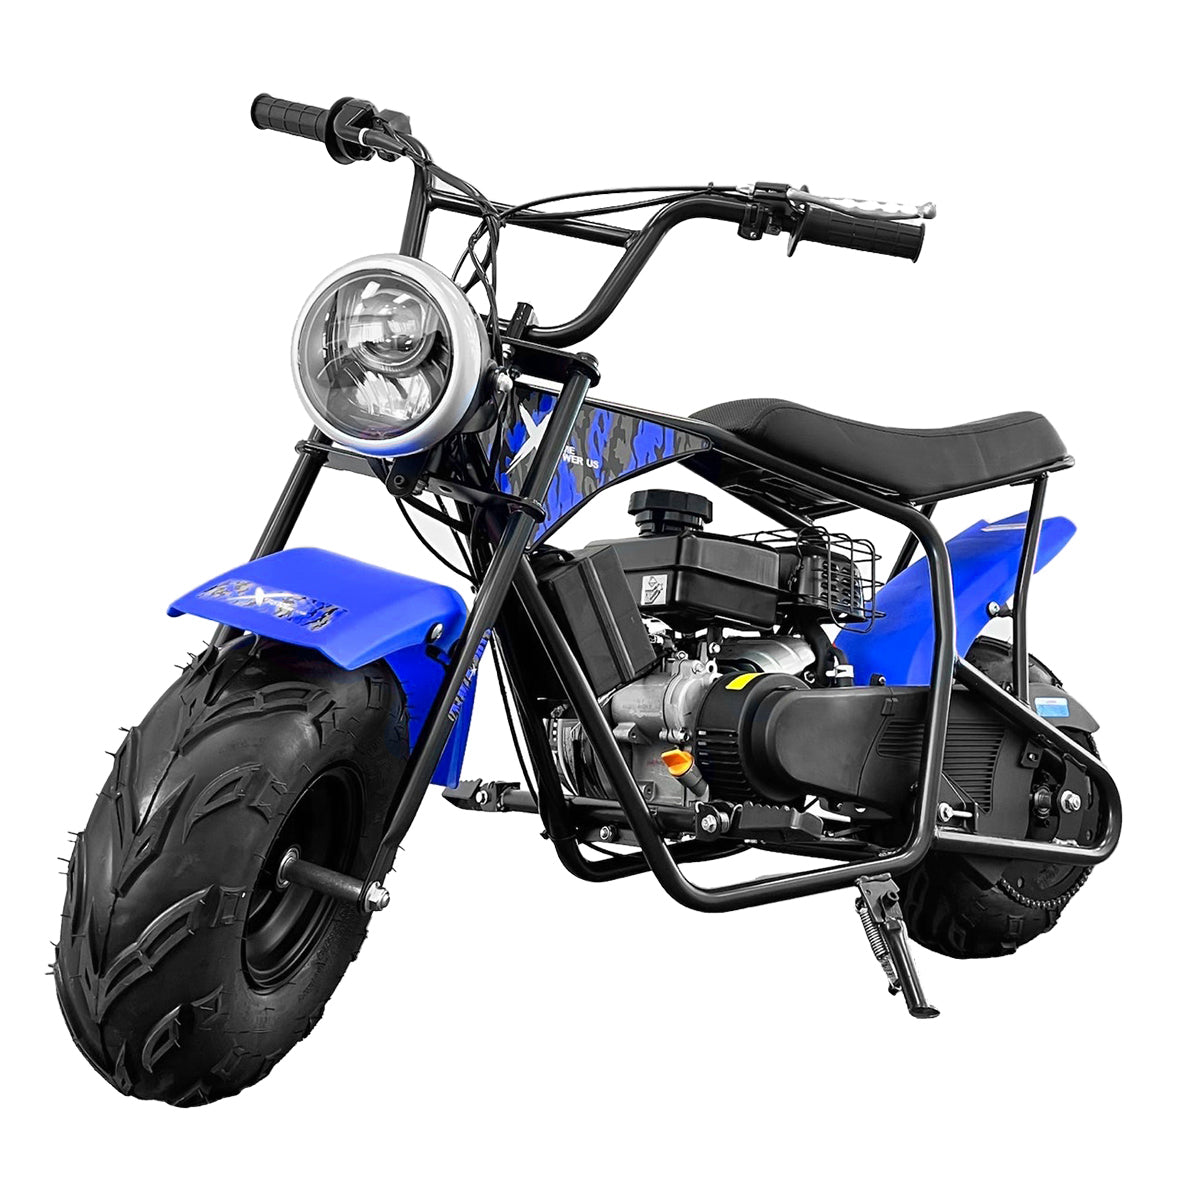 99cc Mini Dirt Bike Gas-Power 4-Stroke Pocket Bike Pit Motorcycle